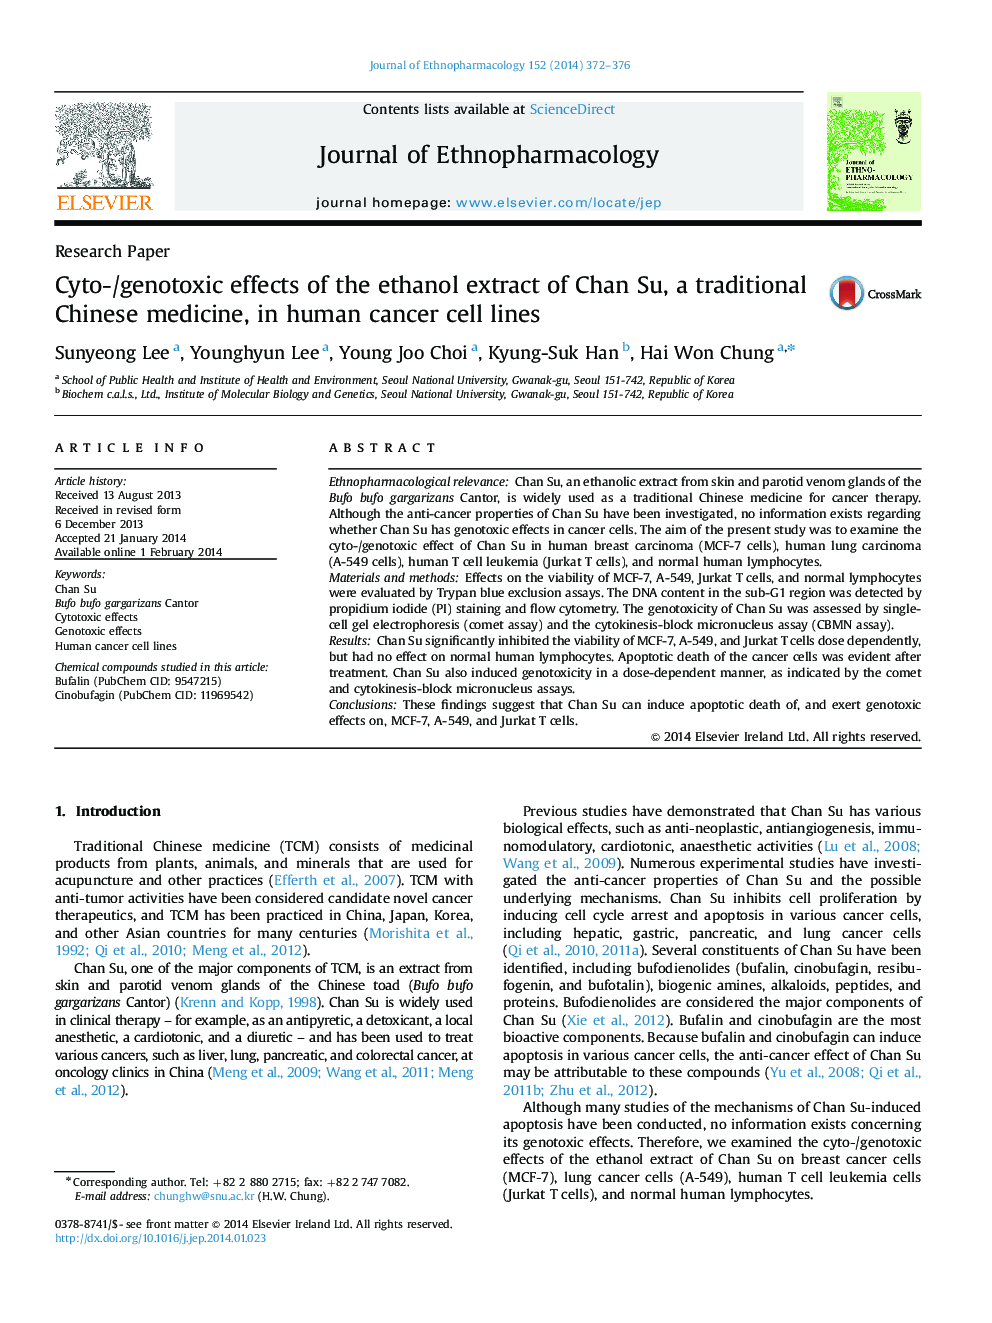 اثرات سیتو / ژنوتوسیک عصاره اتانول چان سو، یک طب سنتی چینی، در سلول های سرطانی انسان 